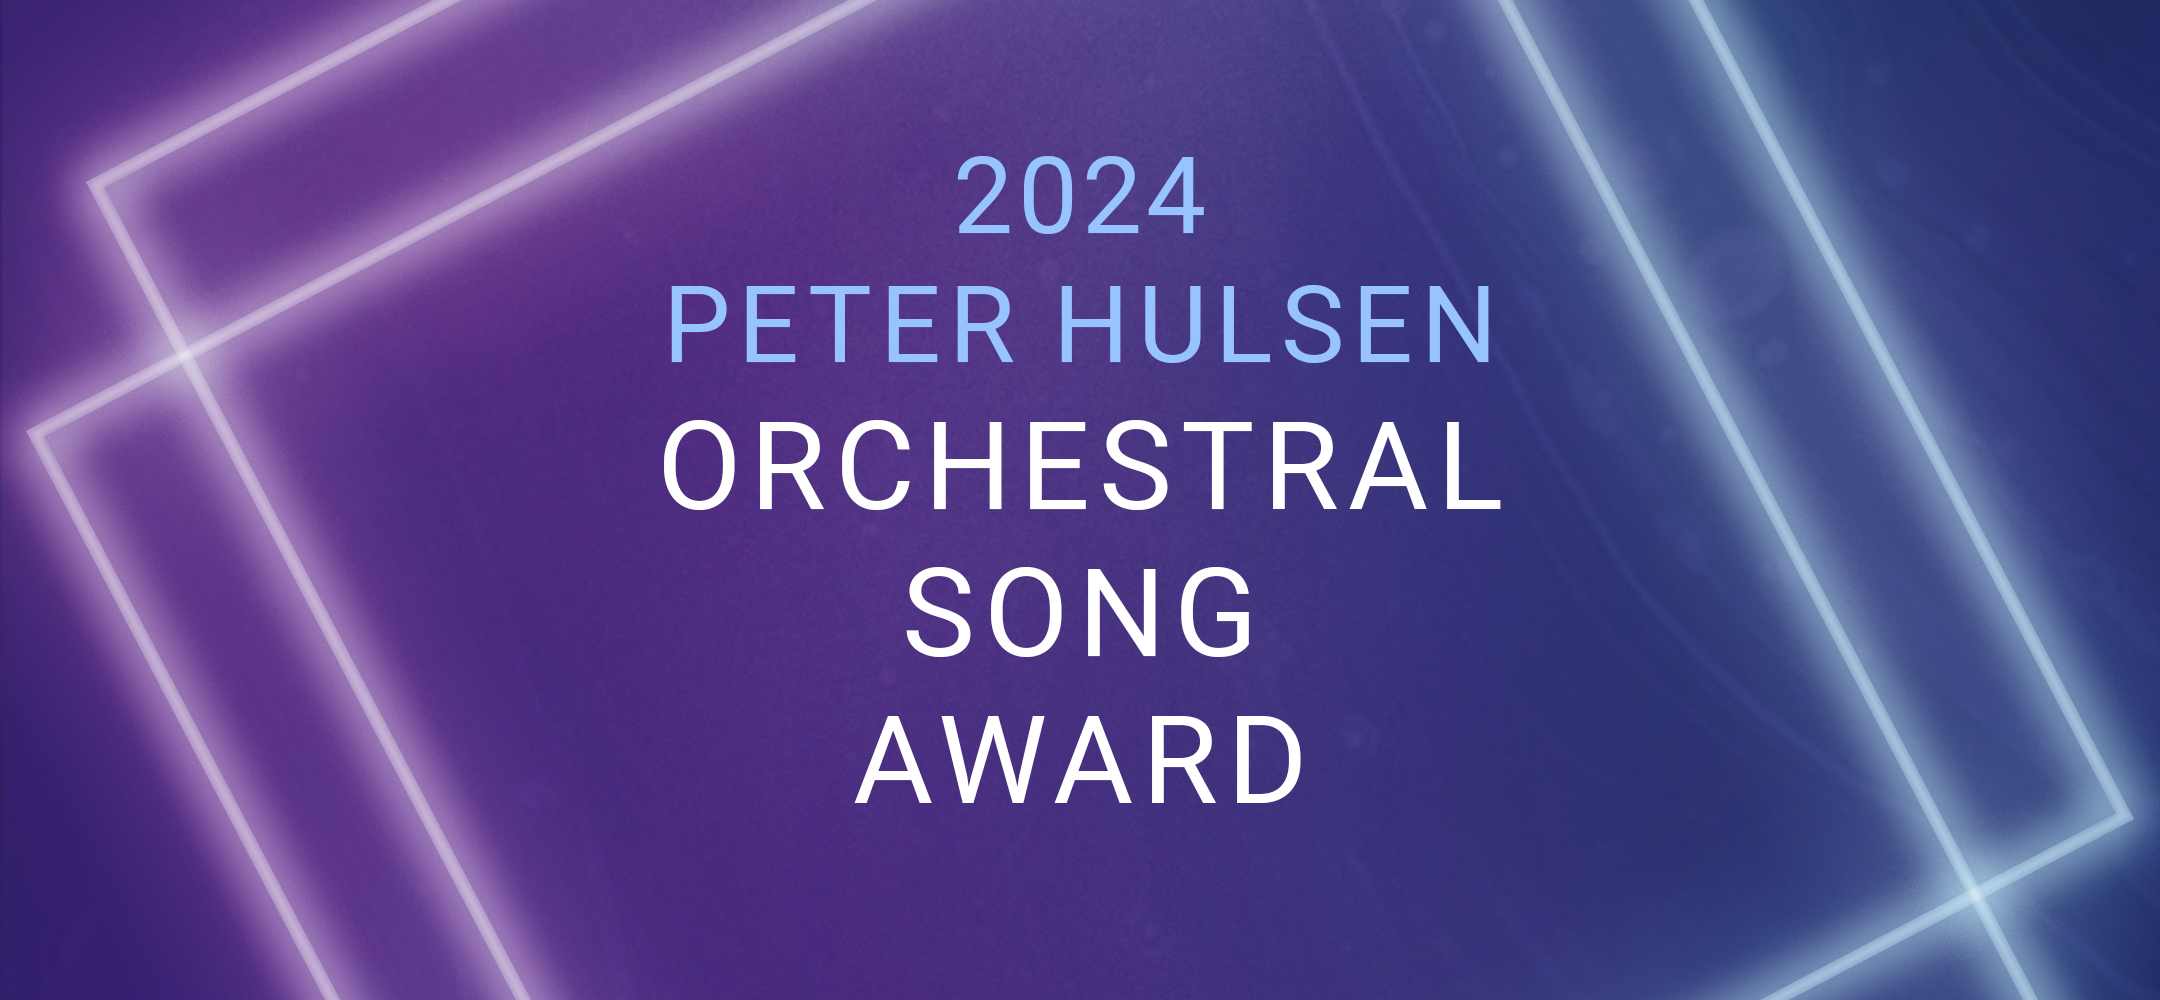 Peter Hulsen Orchestral Song Award